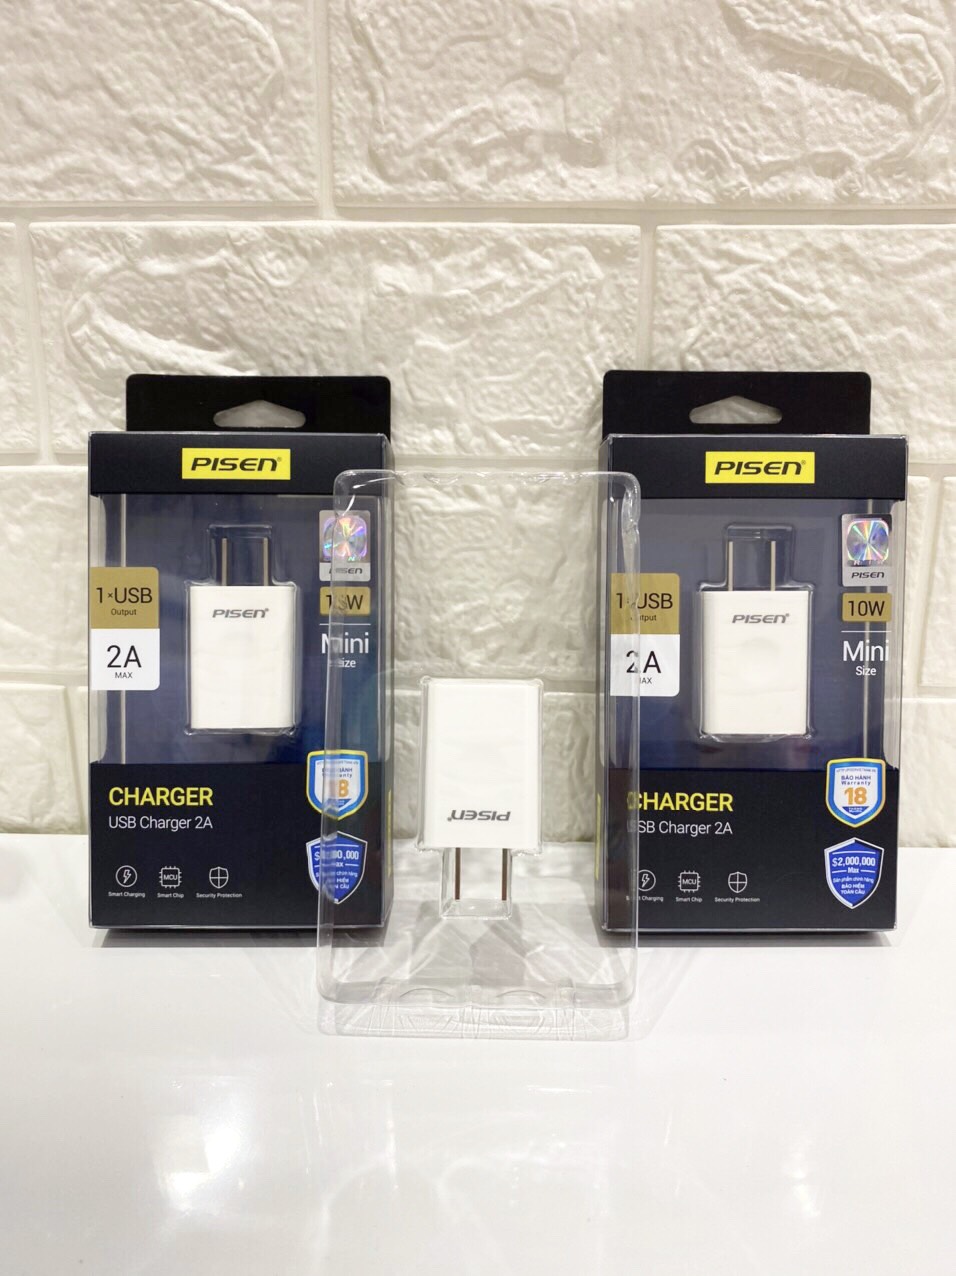 Cốc sạc Pisen USB Charger 2A  – Hàng chính hãng